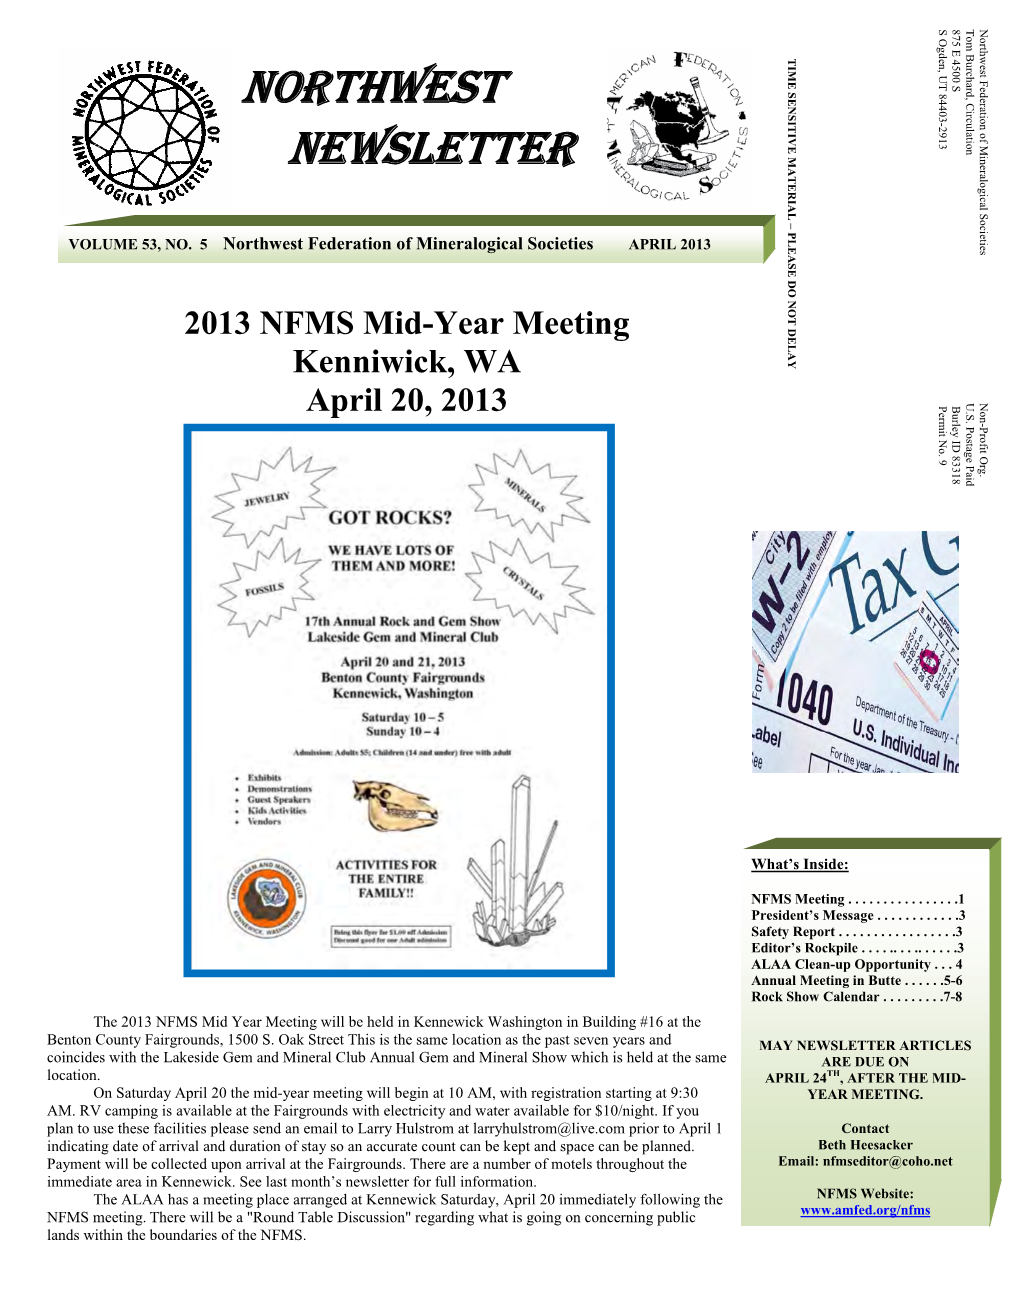 Northwest Newsletter Vol 53, No